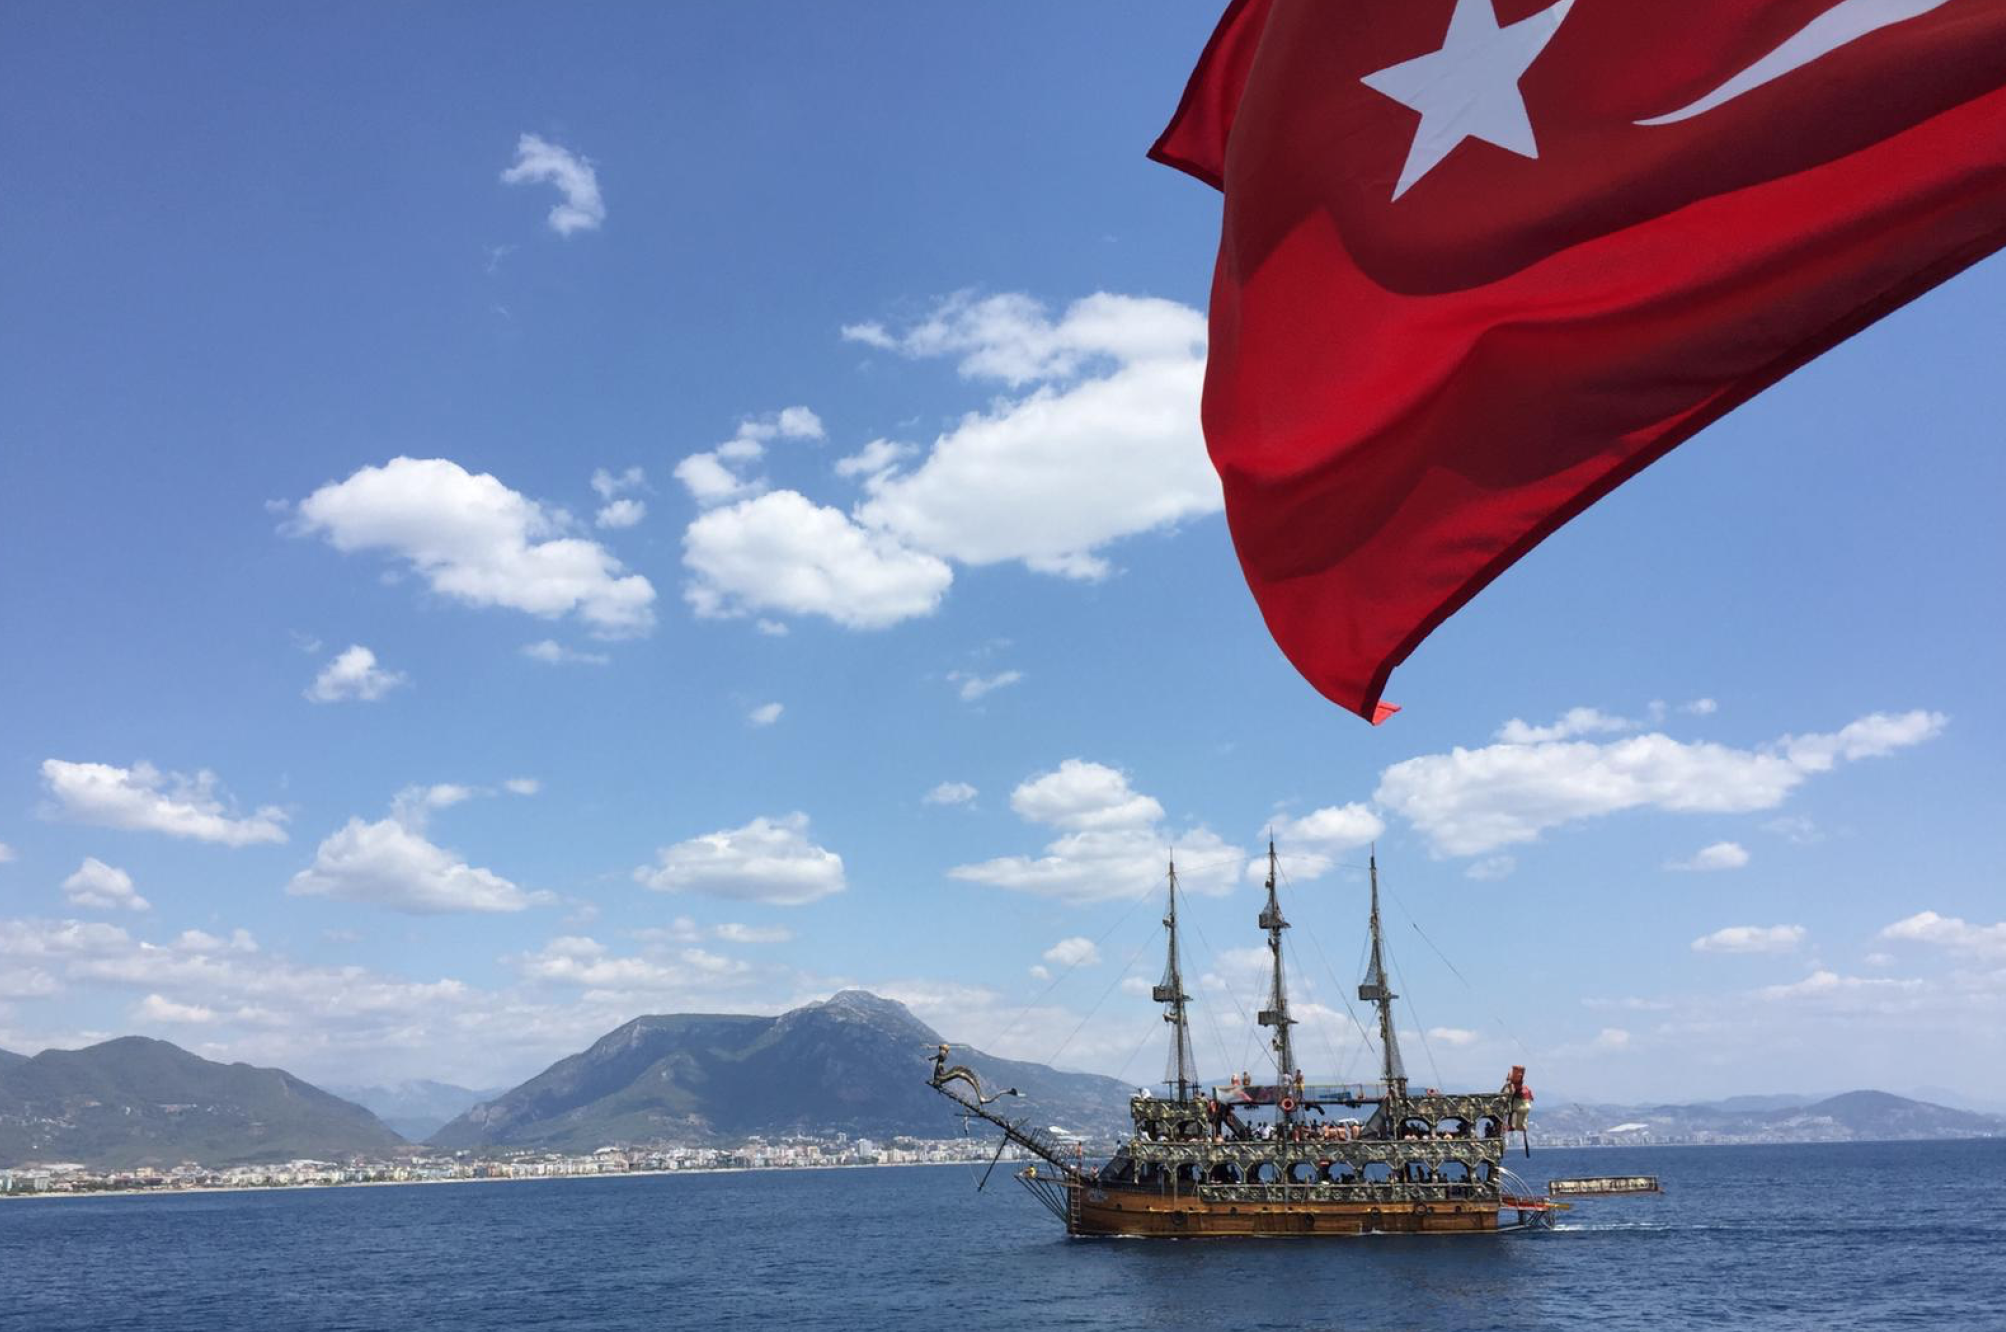 oplevelser i alanya, seværdigheder i alanya, populære oplevelser i alanya, museer i alanya, strande i alanya, bådtur i alanya, tyrkiske landsbyer, wellness oplevelser i alanya, oplevelser i tyrkiet, seværdigheder i tyrkiet